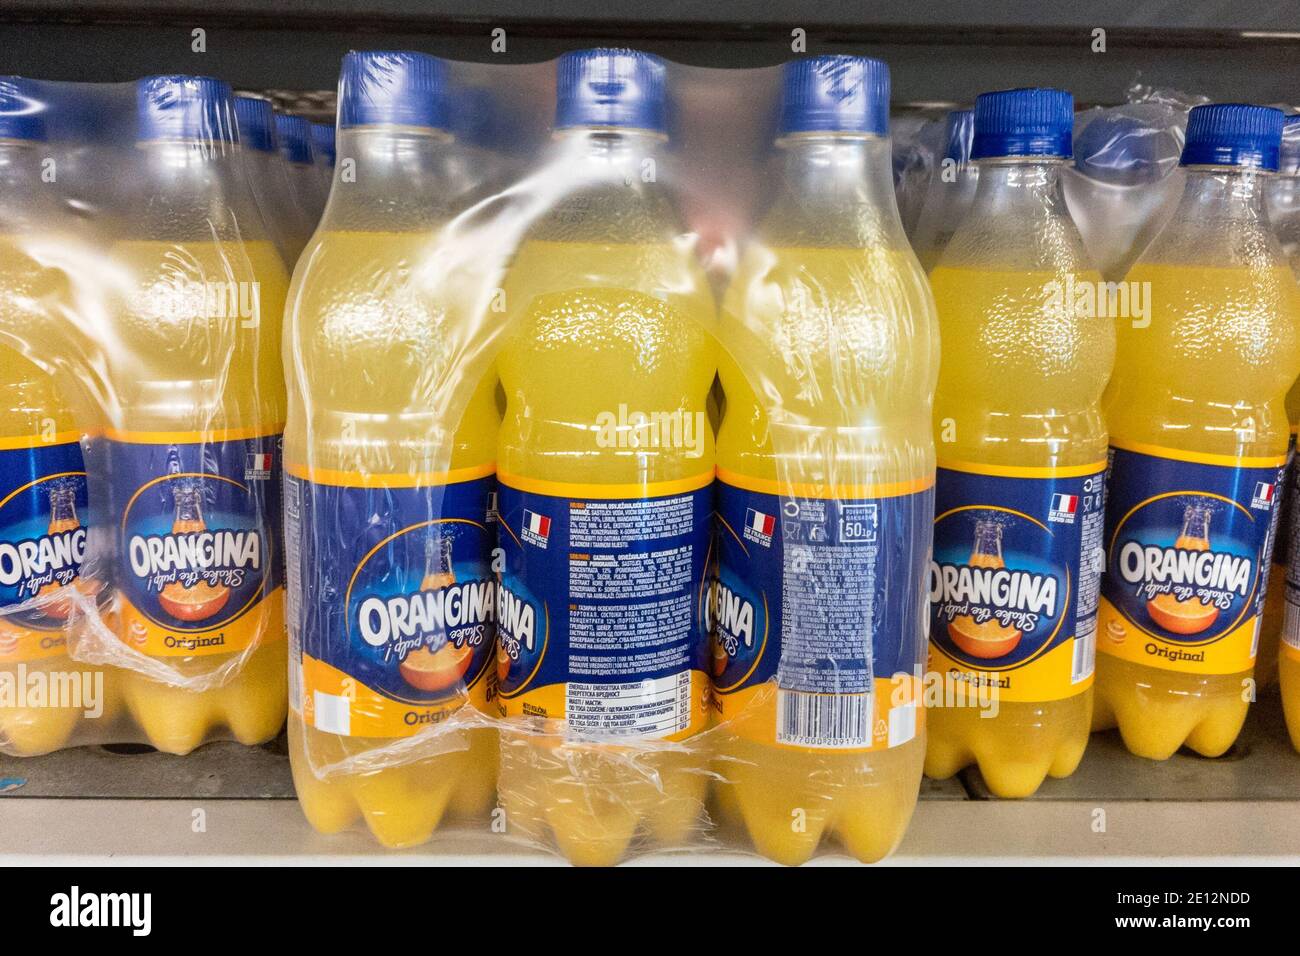 BELGRADO, SERBIA - 27 DICEMBRE 2020: Il logo di Orangina sulle bottiglie in vendita a Belgrado, orangina è un marchio francese di bevande gassate alla soda arancione. Foto Stock